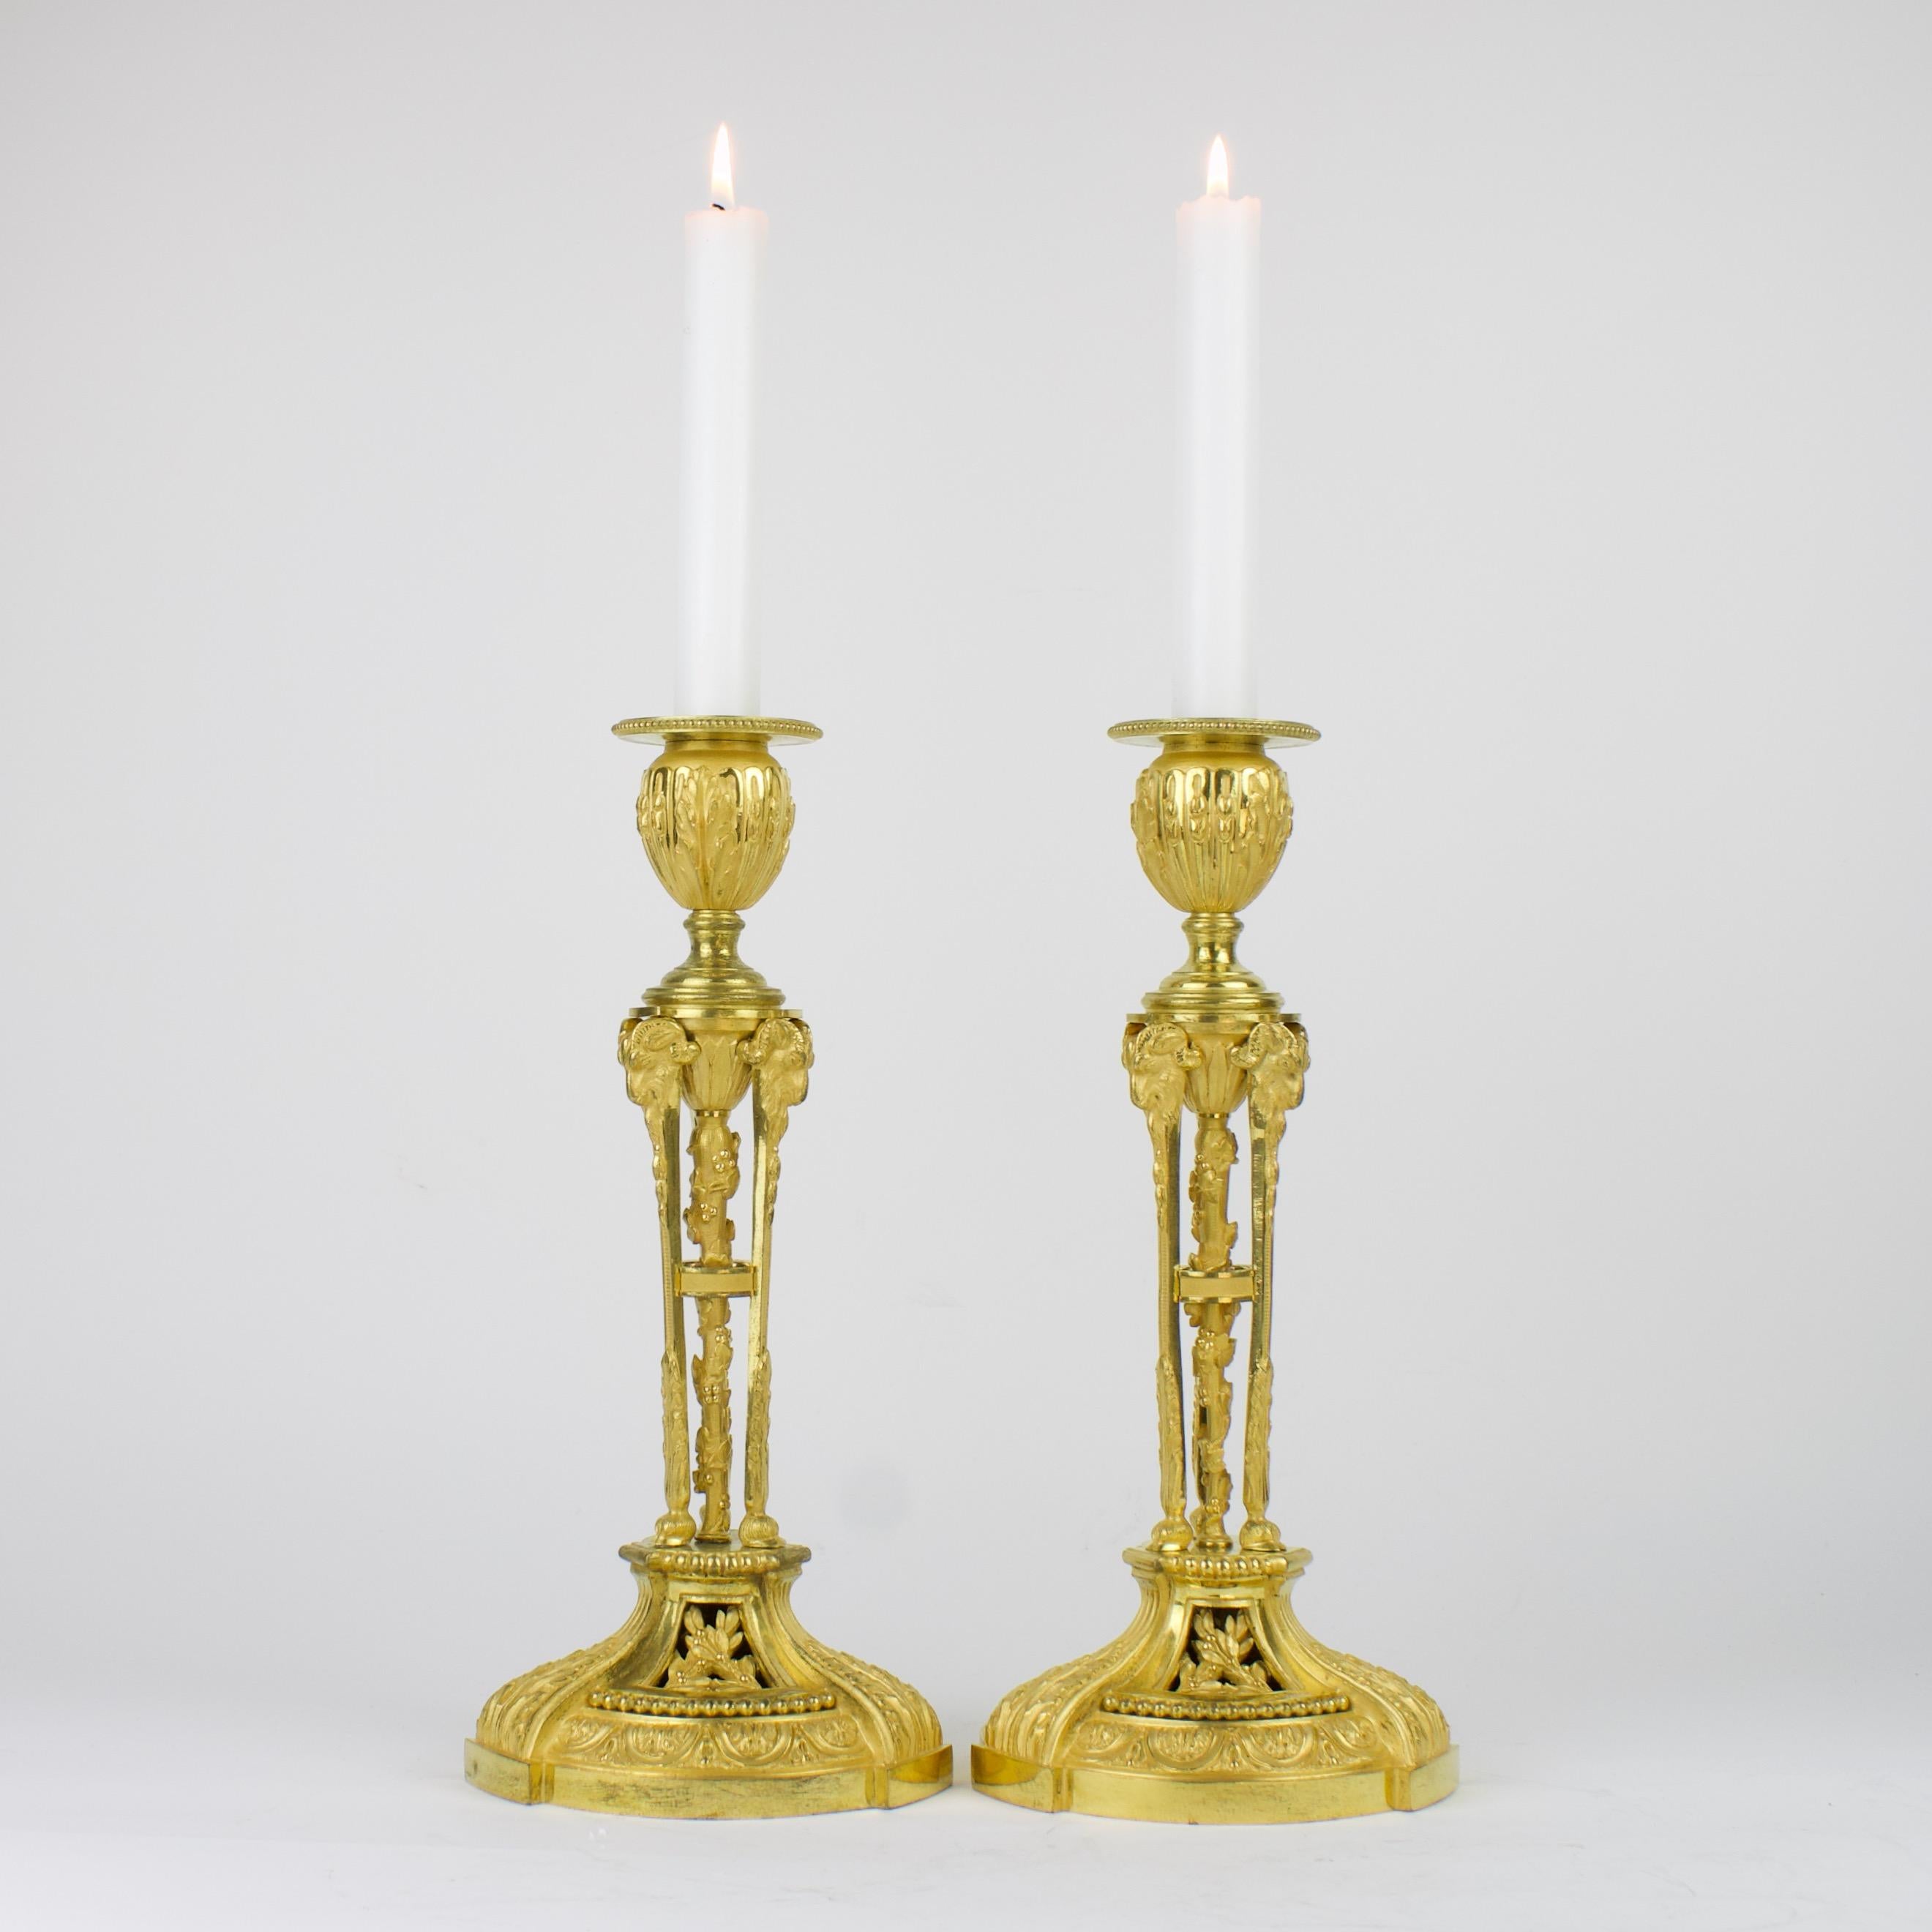 Excellente paire de chandeliers Louis XVI en bronze doré d'après un modèle d'Etienne Martincourt (maître 1762, mort après 1791) : 
Fût de chandelier à l'Athénienne composé de trois cariatides à tête et sabots de bélier reposant sur une base